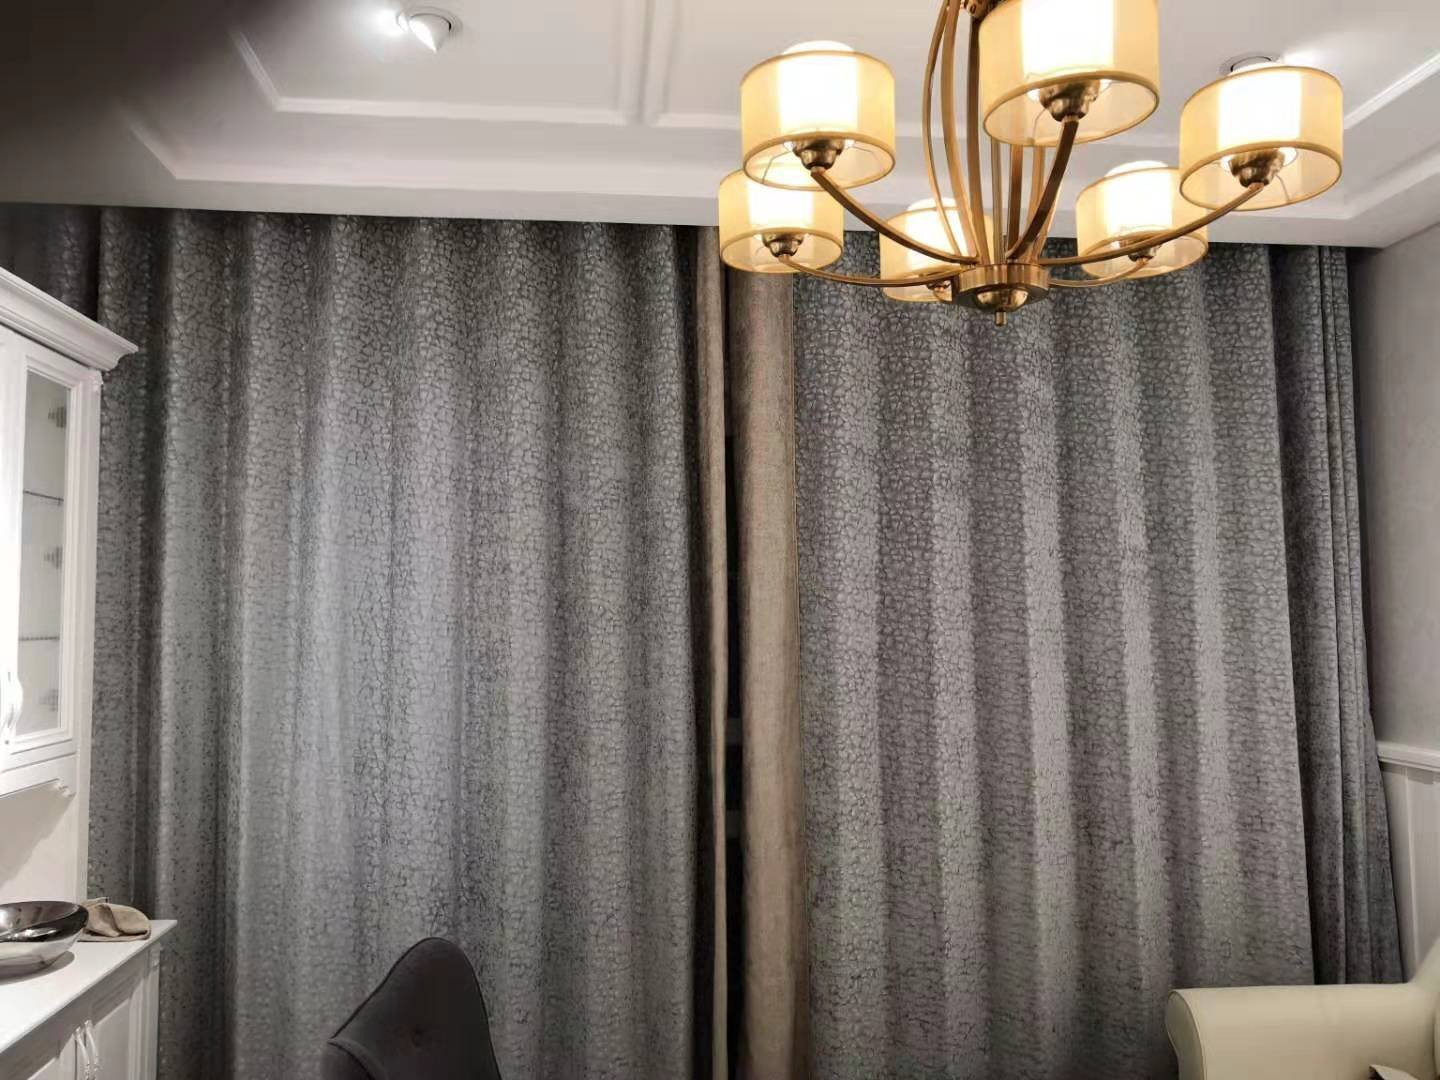 伊莎莱-现代风格客厅窗帘效果图-客厅窗帘图片